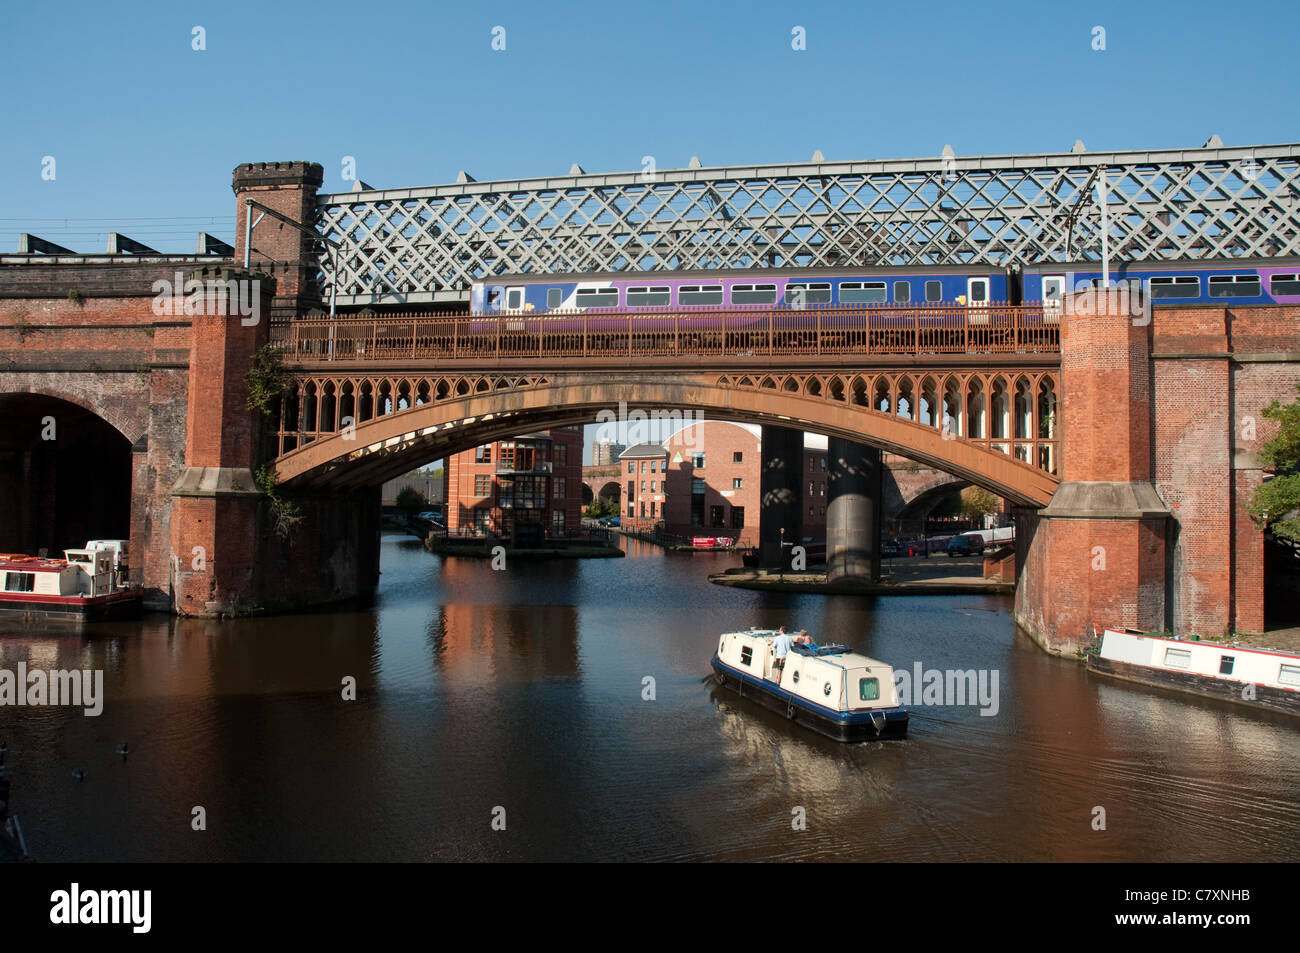 Système de canaux et de ponts dans le quartier de Castlefield Manchester. Banque D'Images